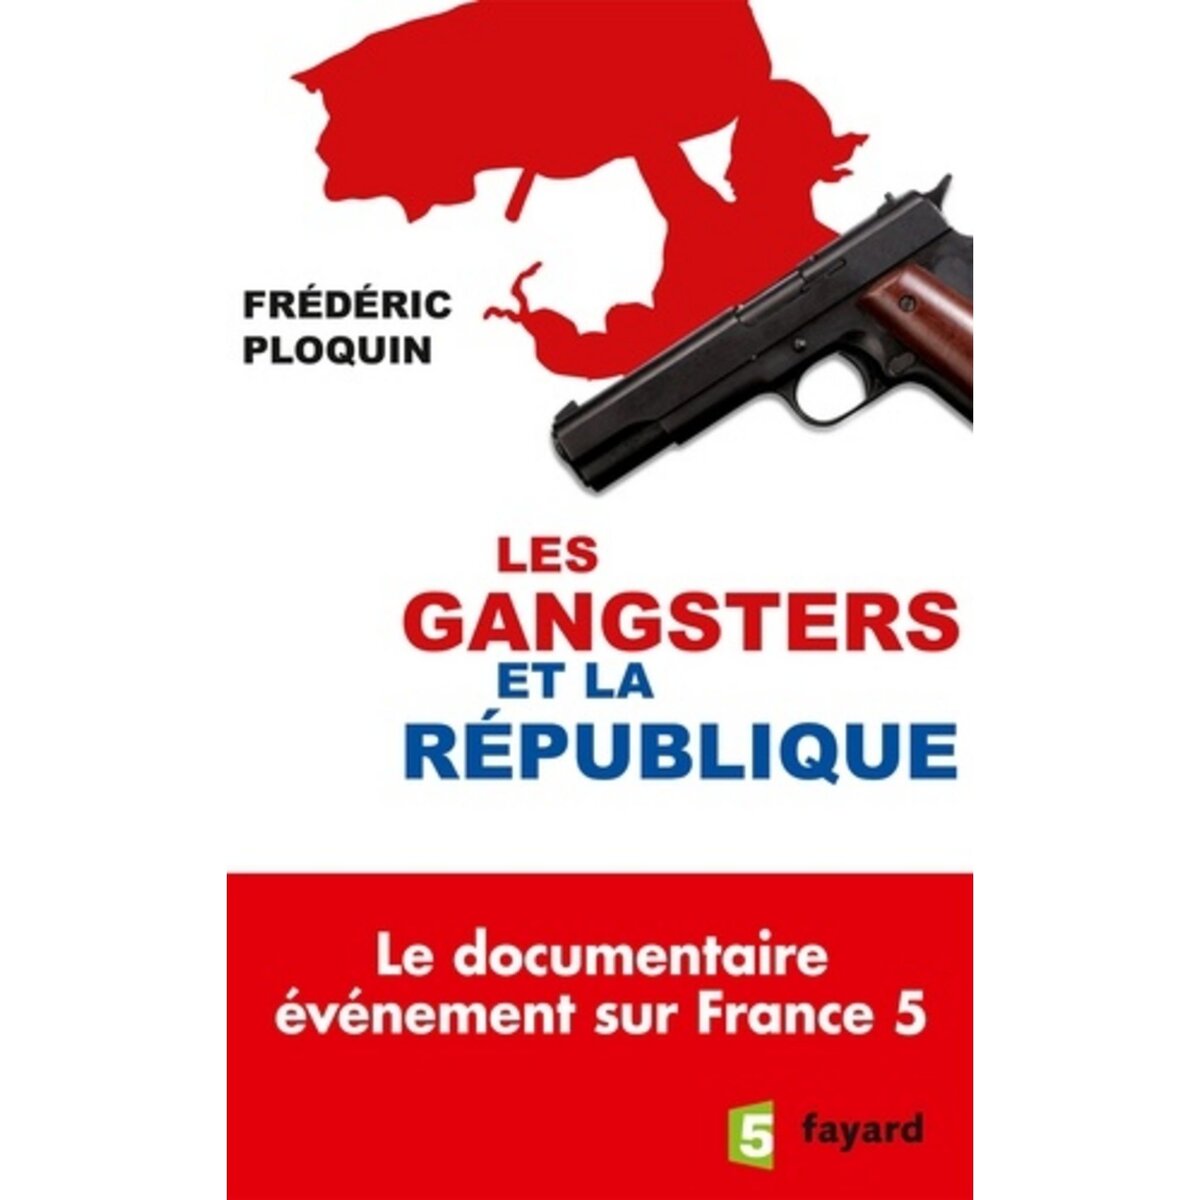  LES GANGSTERS ET LA REPUBLIQUE, Ploquin Frédéric